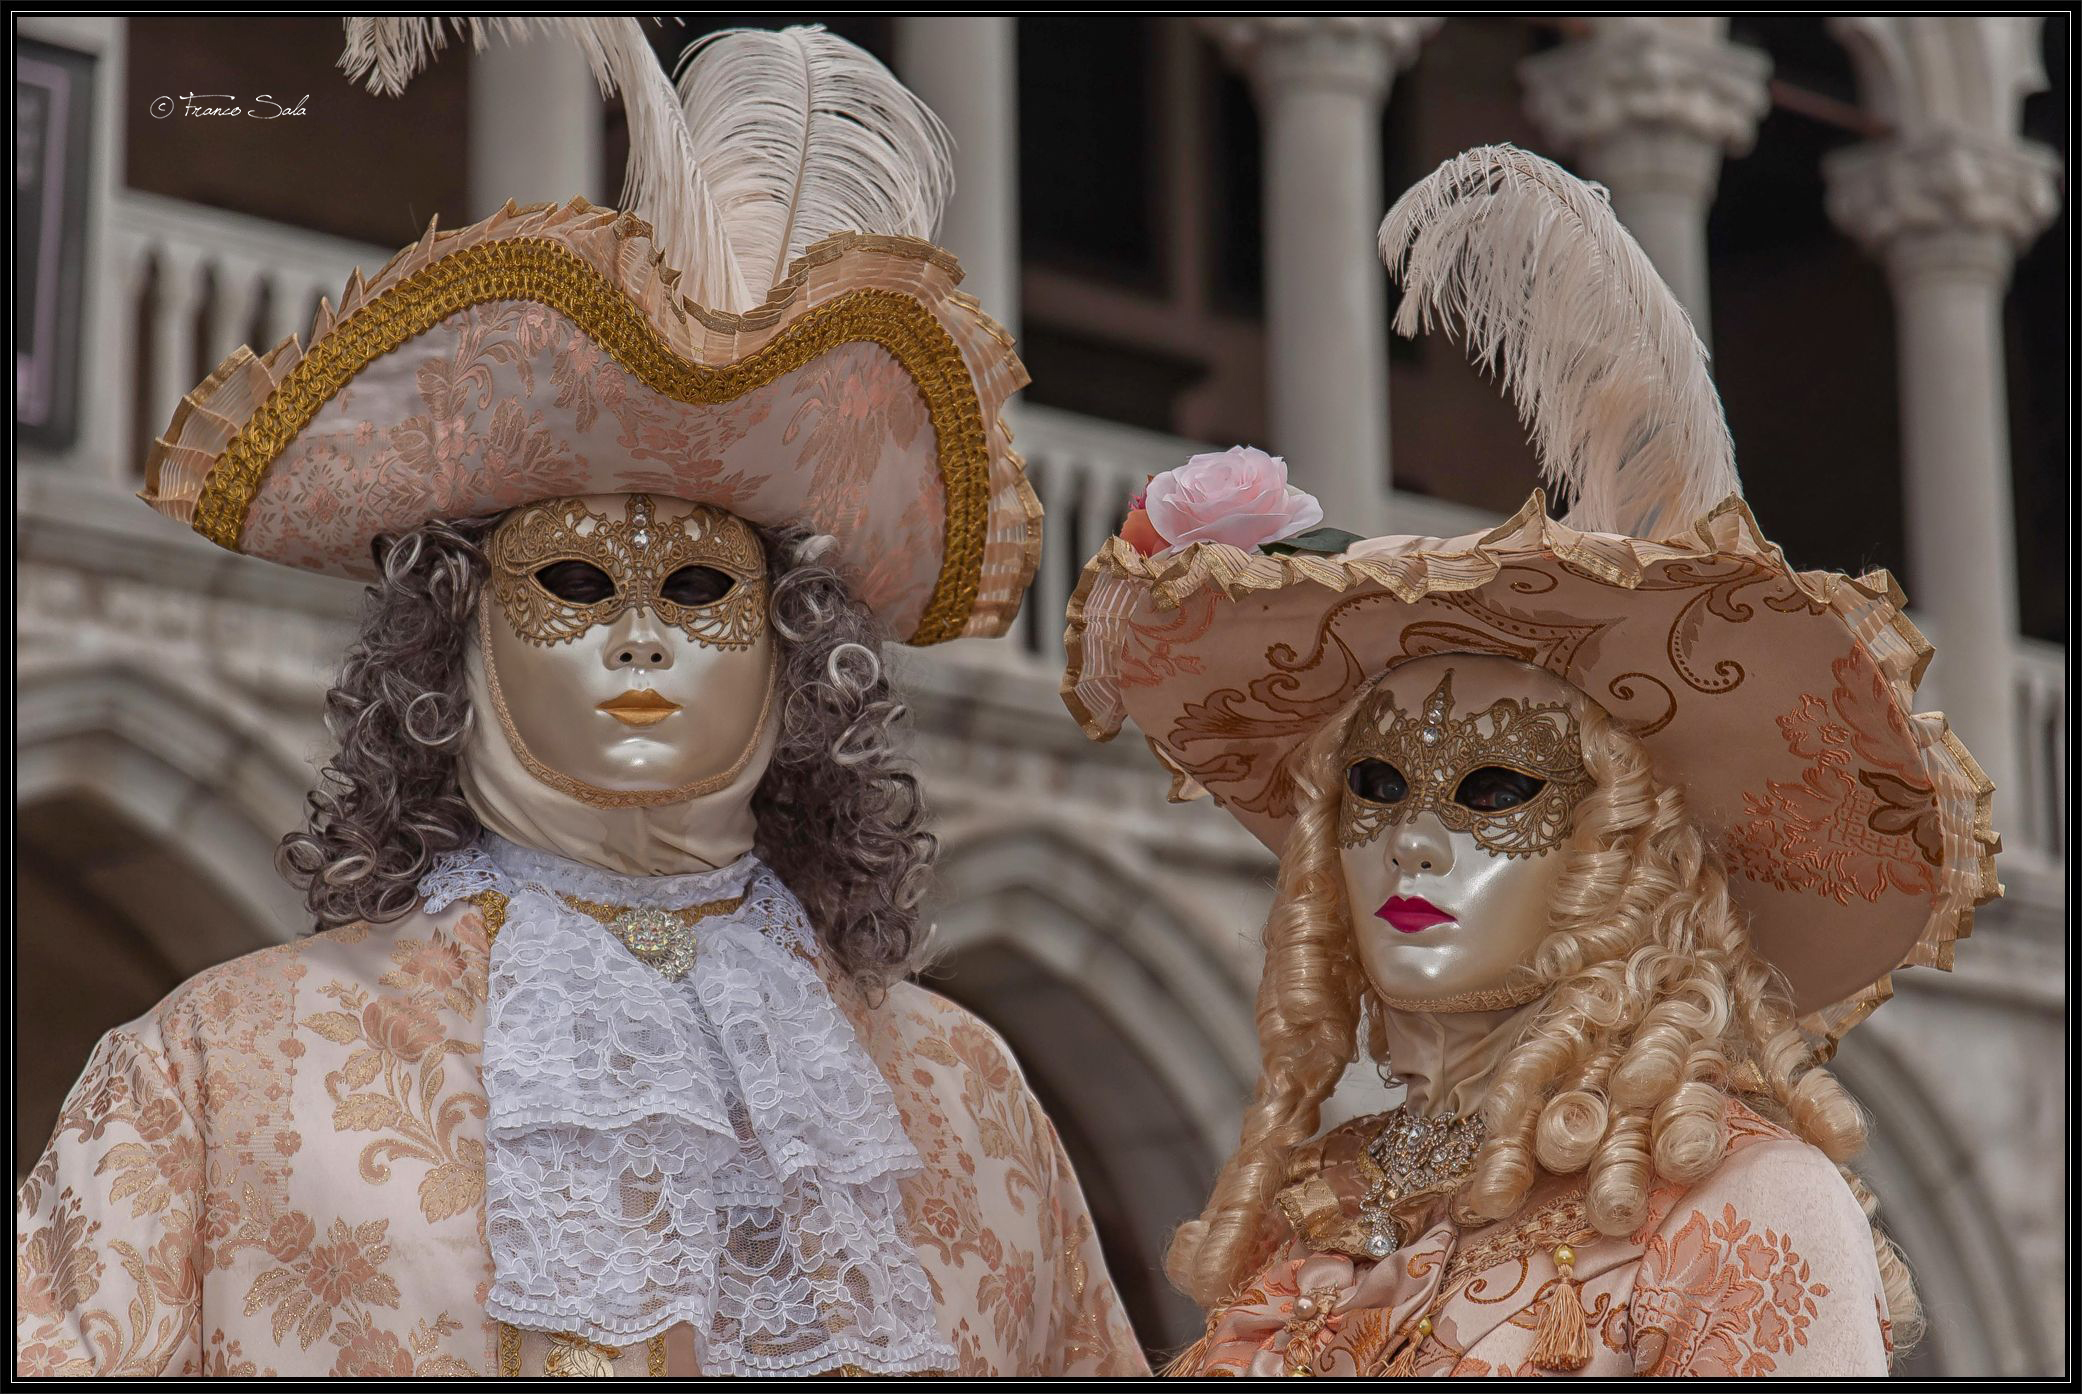 Venetian masks...